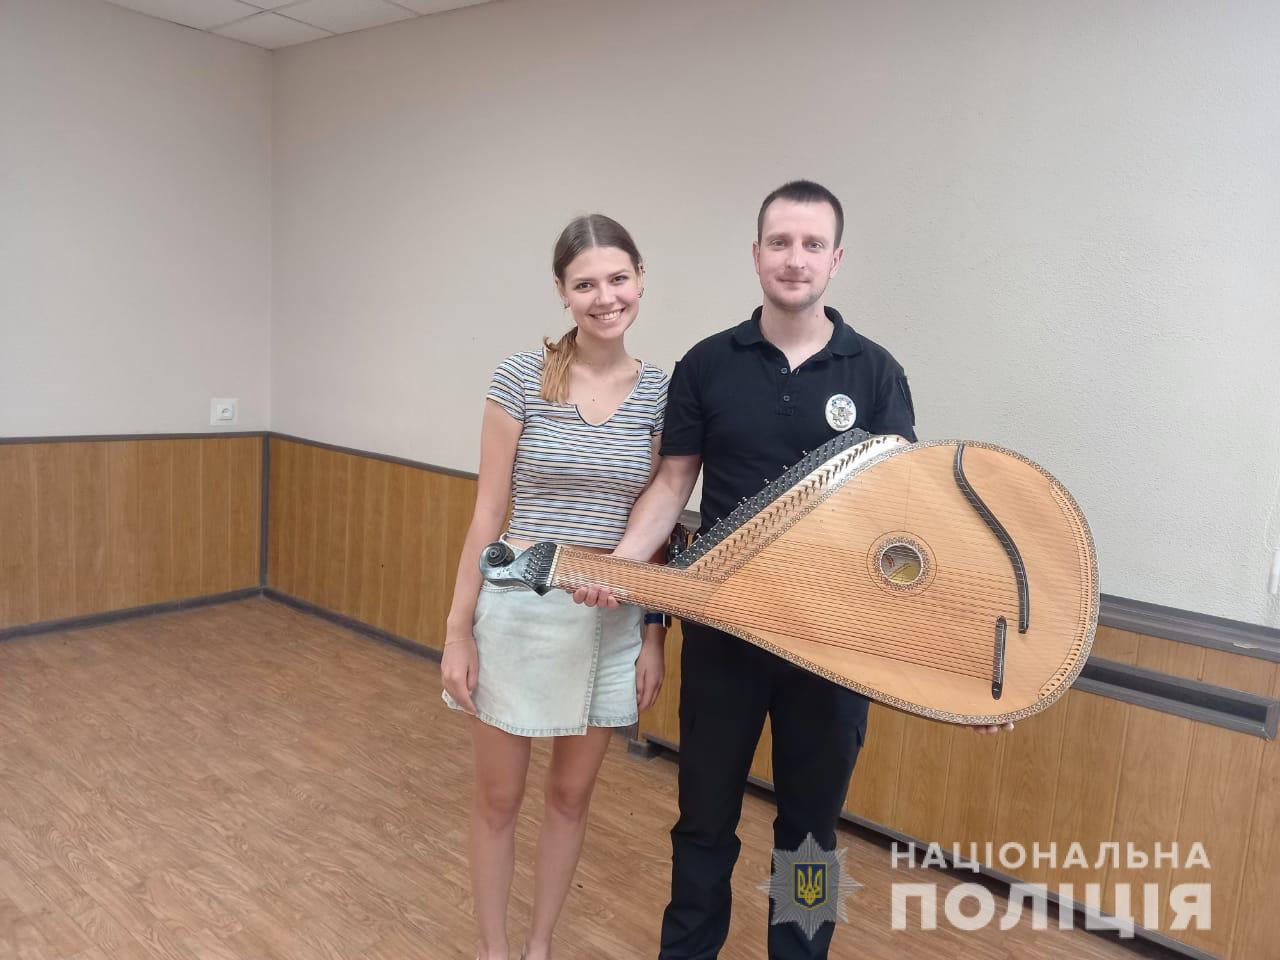 Вор украл старинный инструмент за 100 тысяч гривен, и пойман полицией Харькова